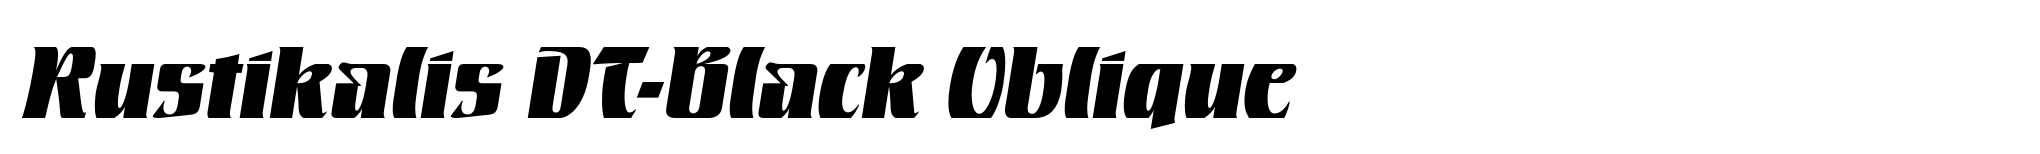 Rustikalis DT-Black Oblique image